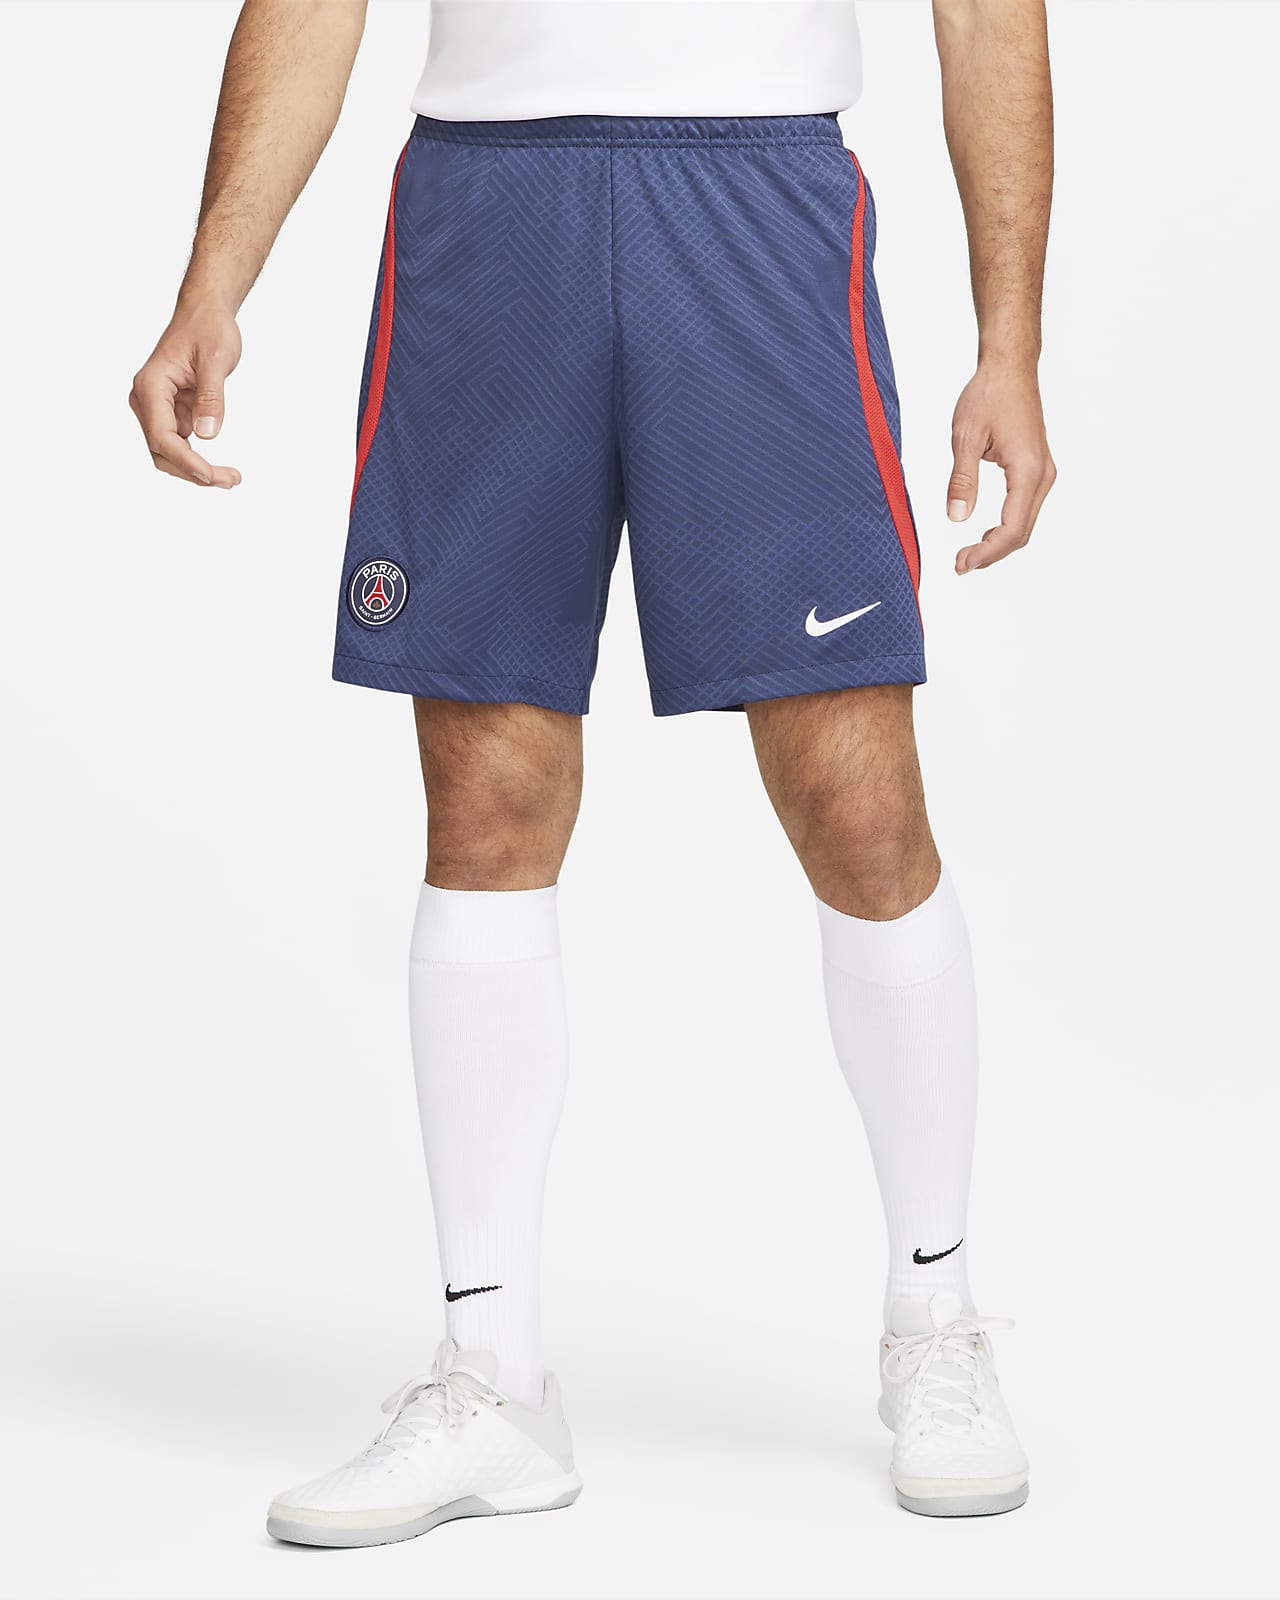 Paris Saint-Germain Strike Men's Nike Dri-FIT Soccer Shorts.